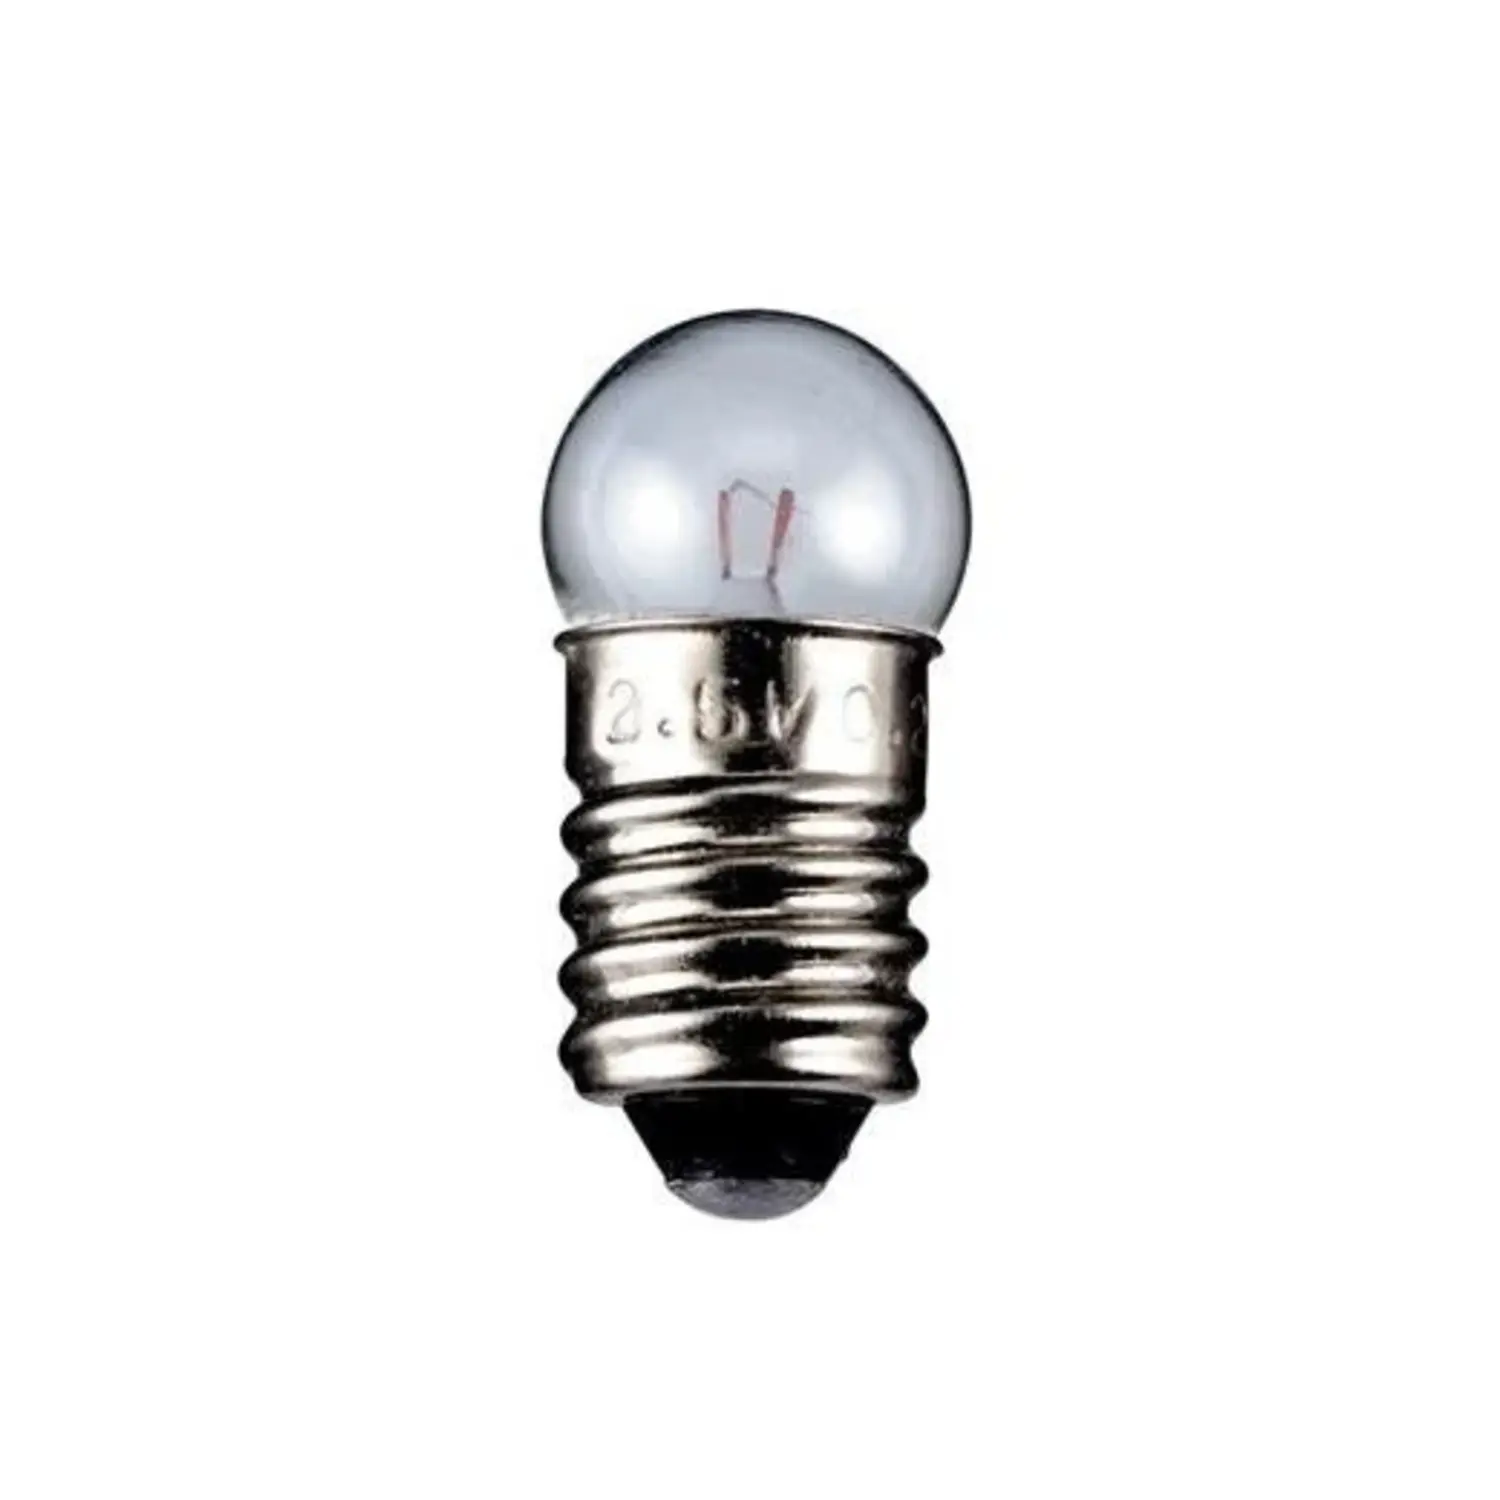 immagine del prodotto lampadina globulare chiara 3,7 volt trasparente E10 CE 1,10 watt wnt 9324